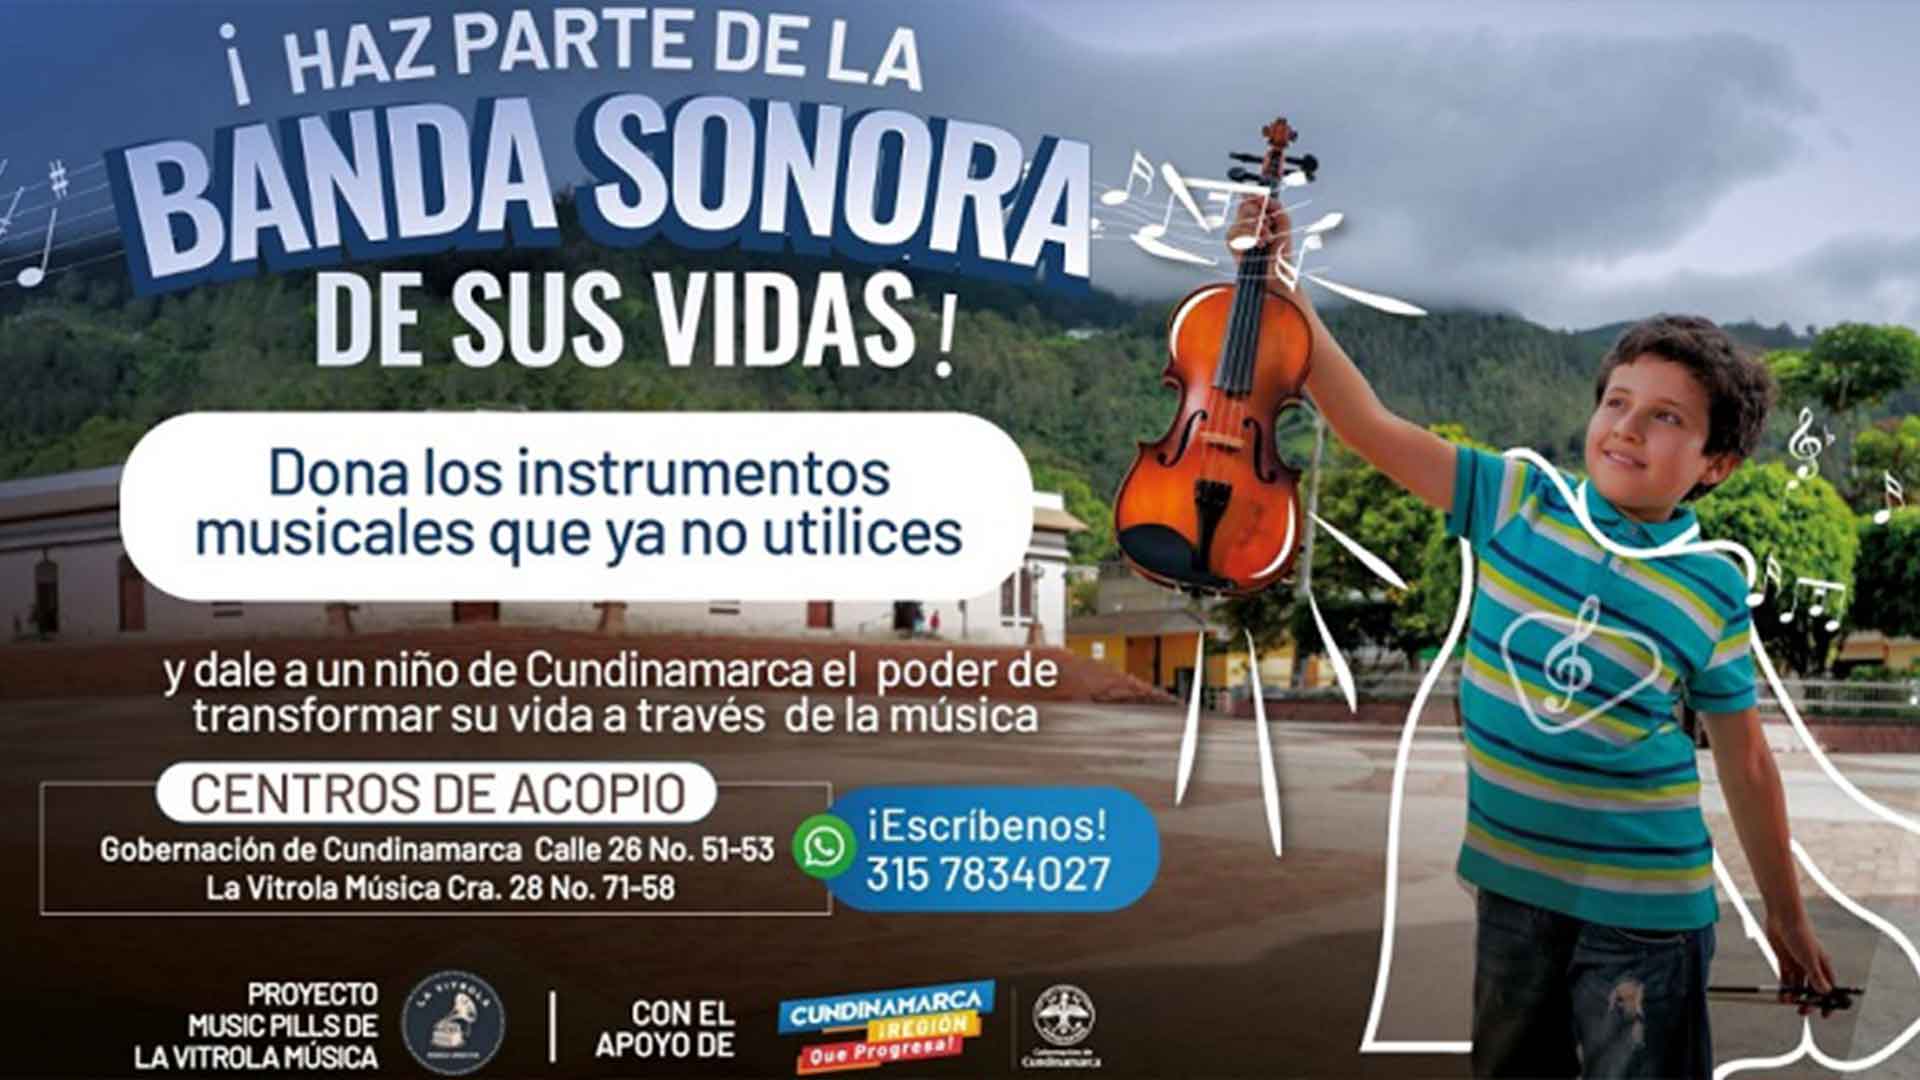 Cundinamarca se une a la campaña “Haz parte de la banda sonora de sus vidas”, que busca la donación de instrumentos musicales a niños.